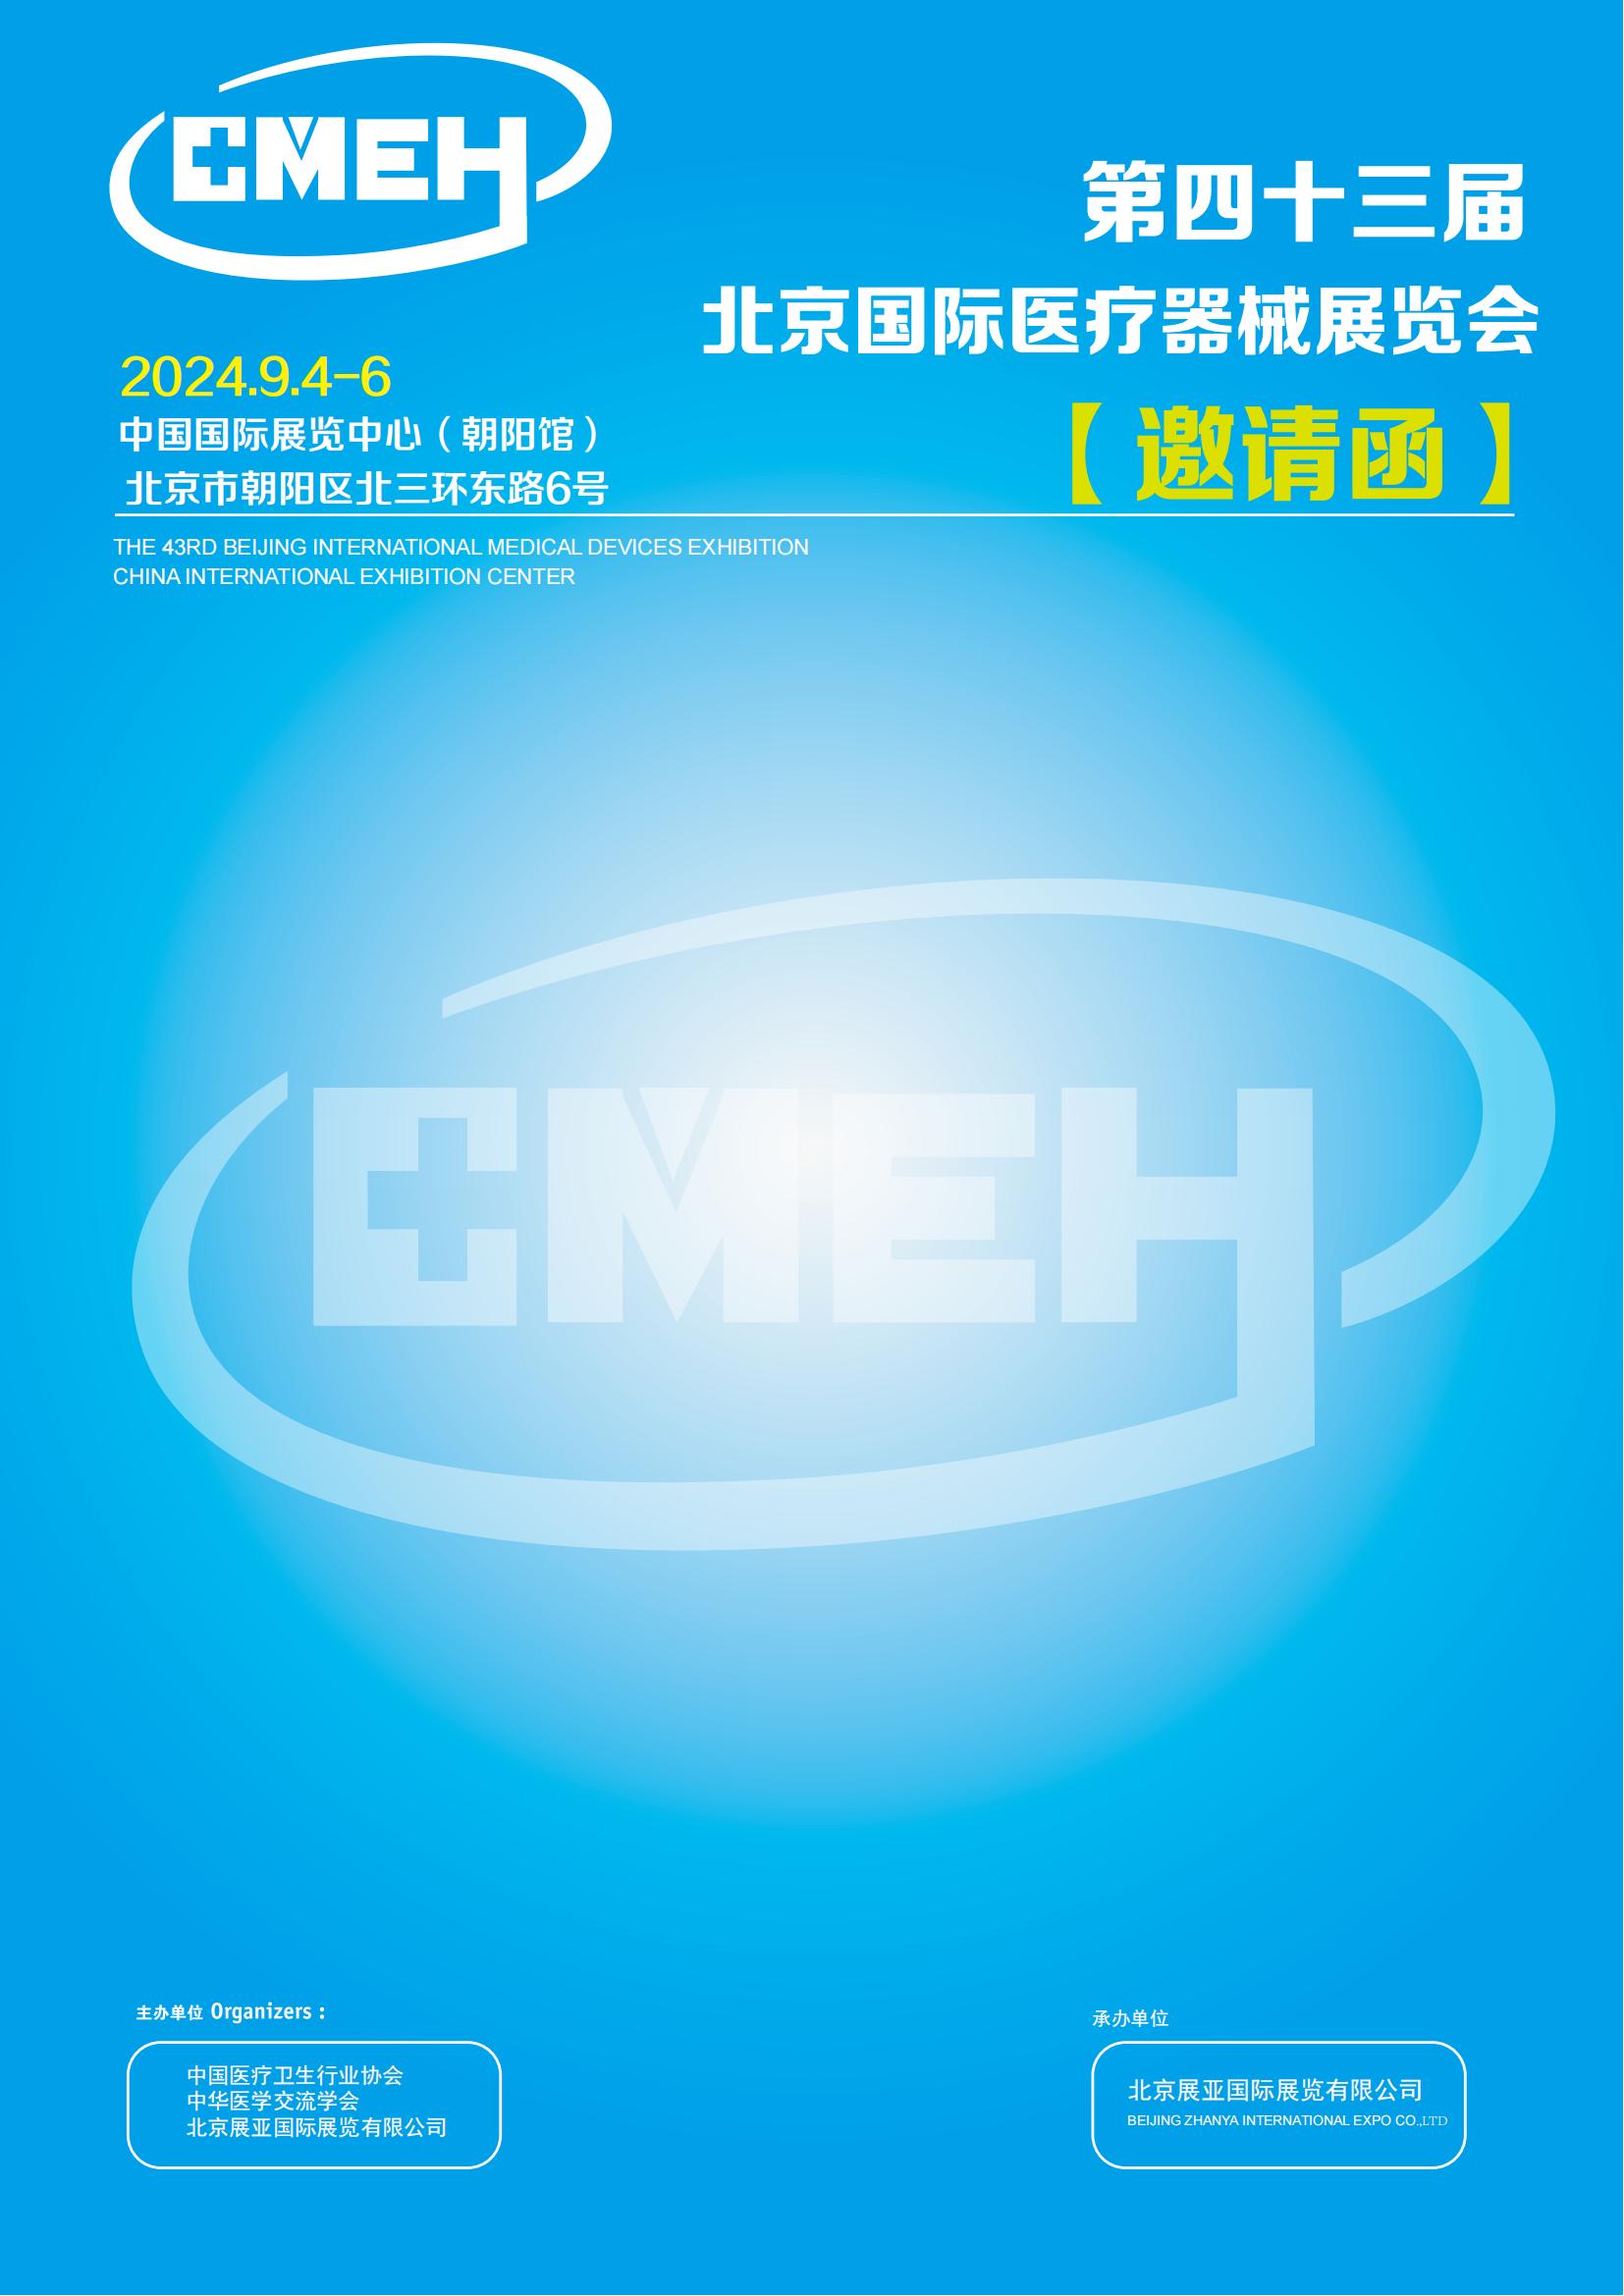 北京国际医疗器械展览会将于2024年9月4日-6日举行